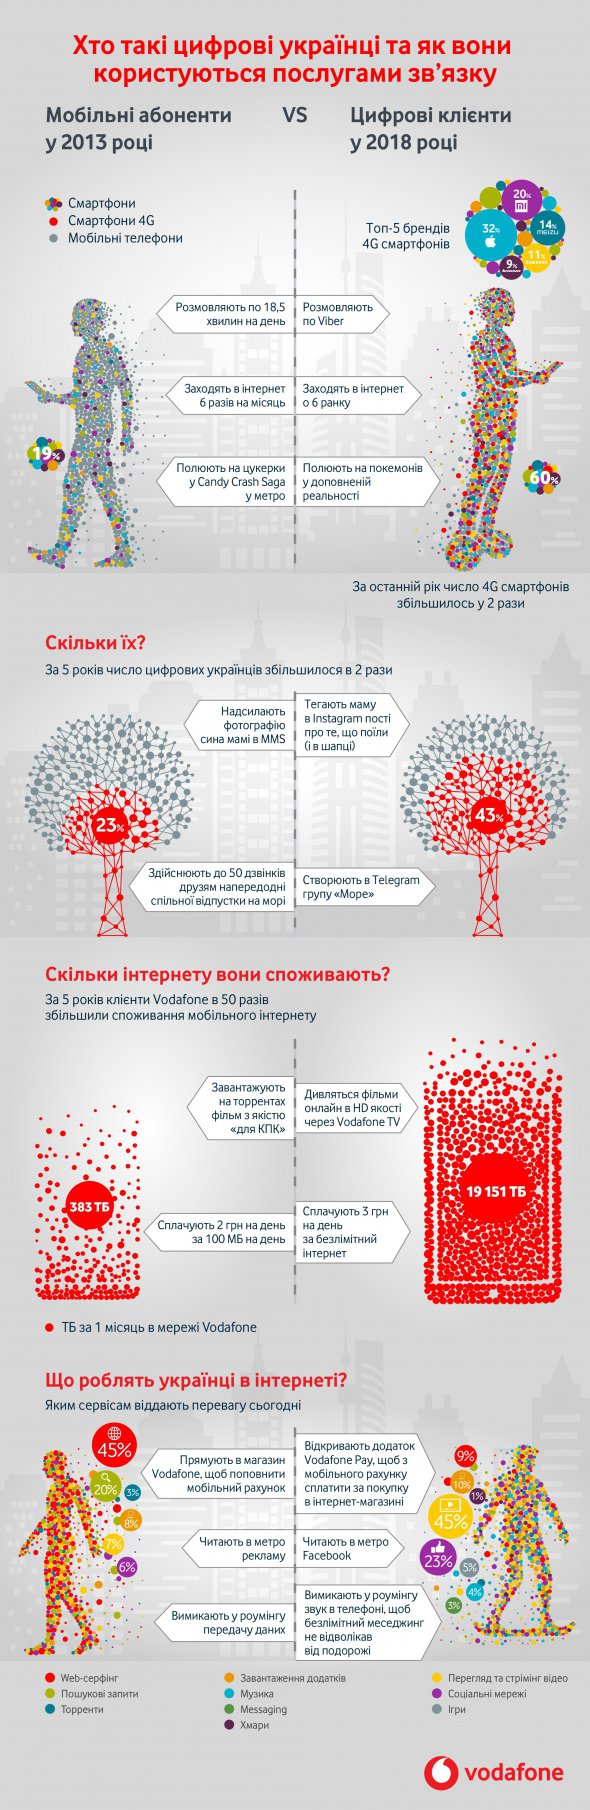 Инфографика от Vodafone Украина: чем пользуются, что делают в интернете, с кем общаются и во что играют украинцы